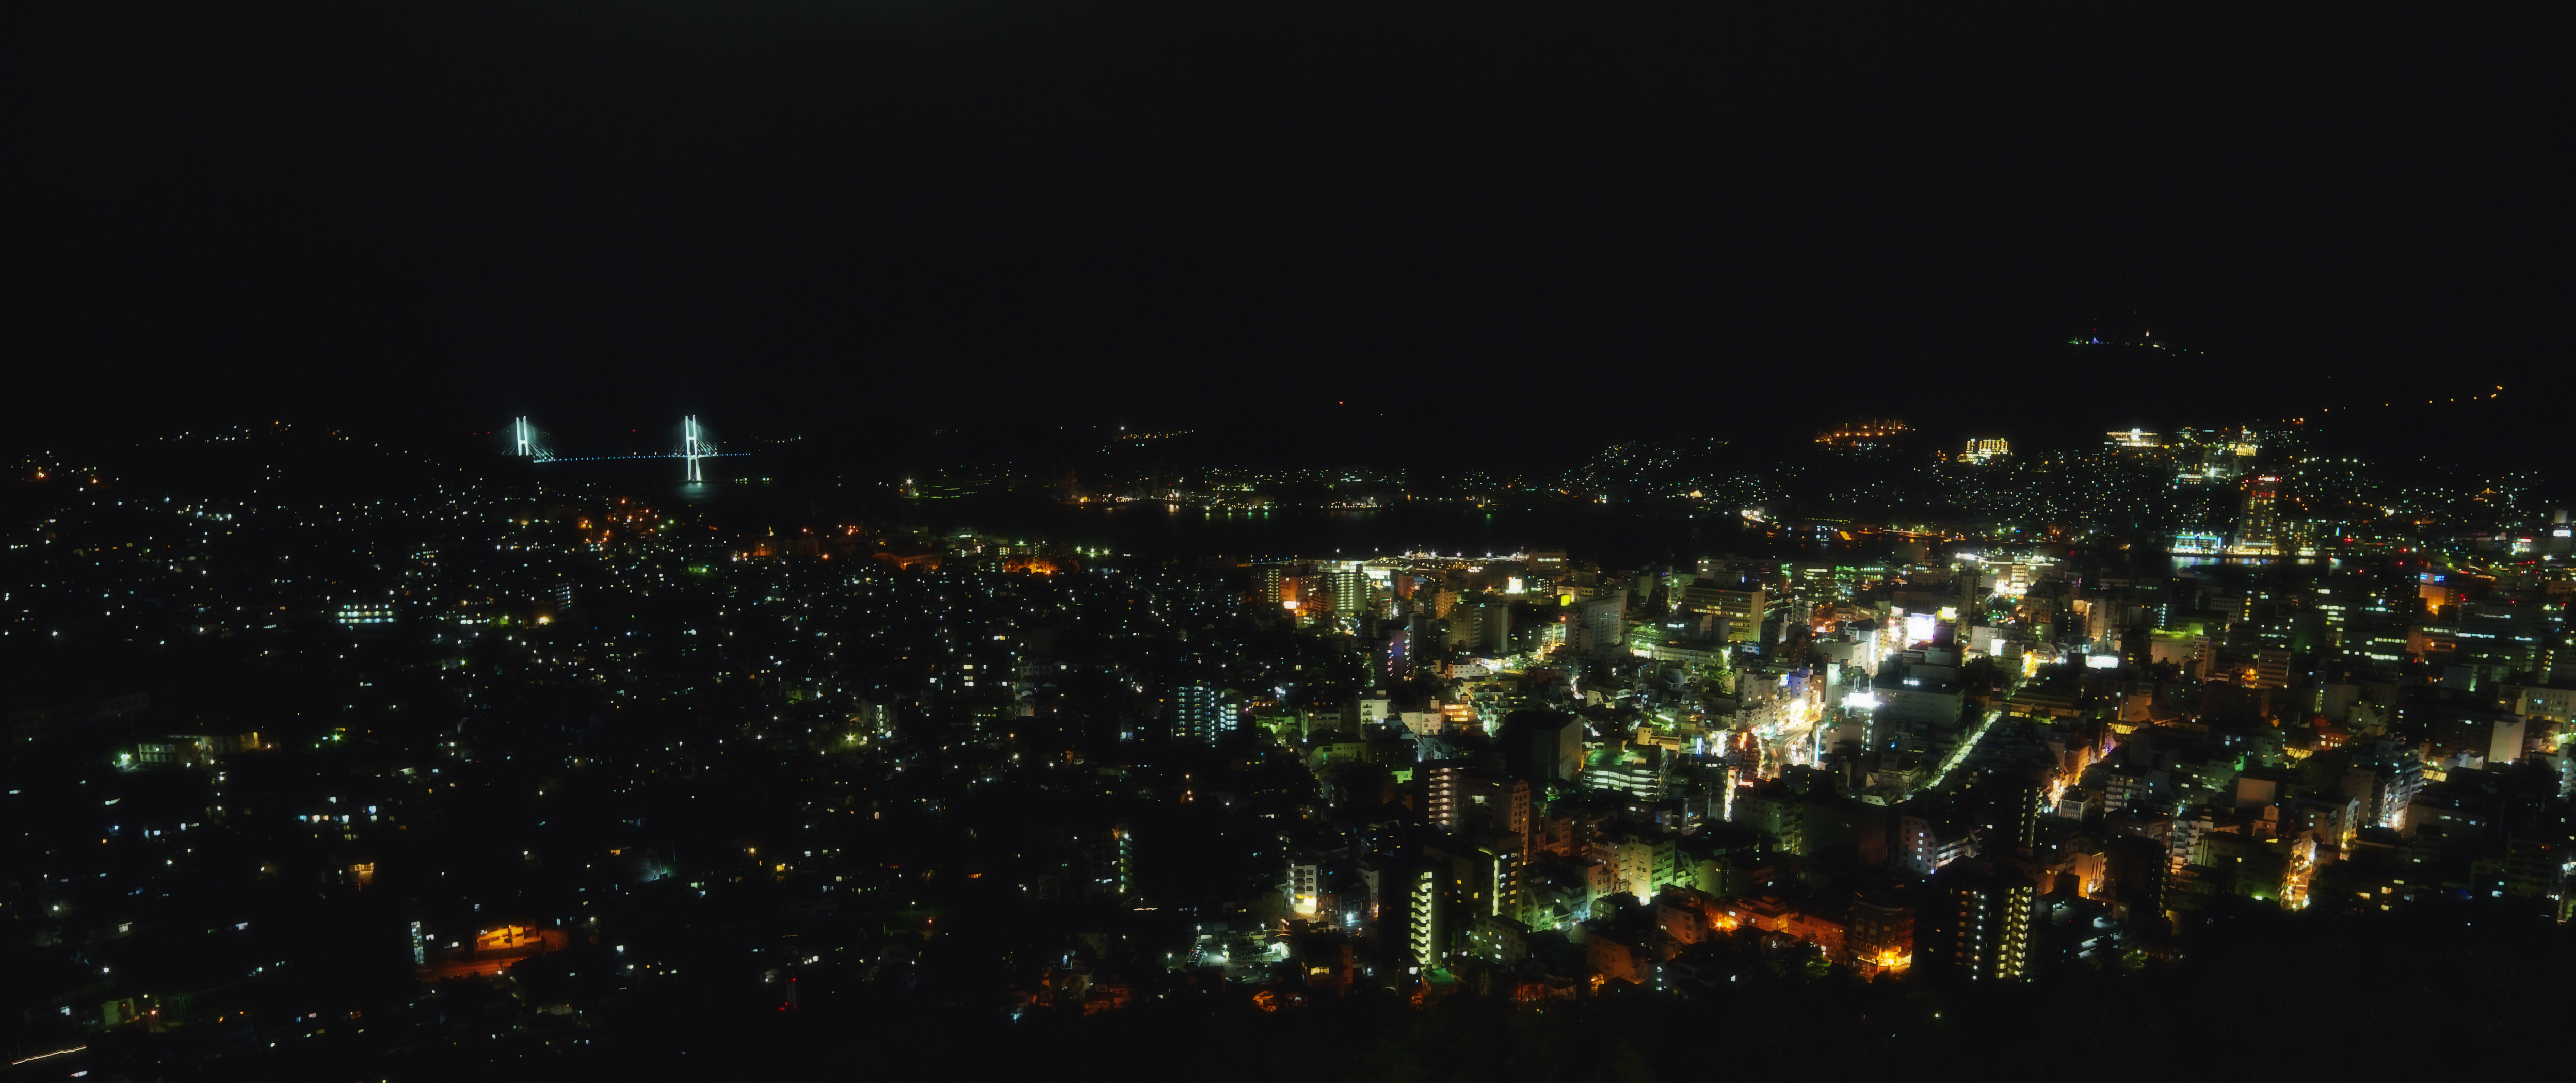 Foto, materiell, befreit, Landschaft, Bild, hat Foto auf Lager,Eine Nacht von Sicht von Nagasaki, Illuminierung, Straenlaterne, Es wird beleuchtet, Gttin Ohashi